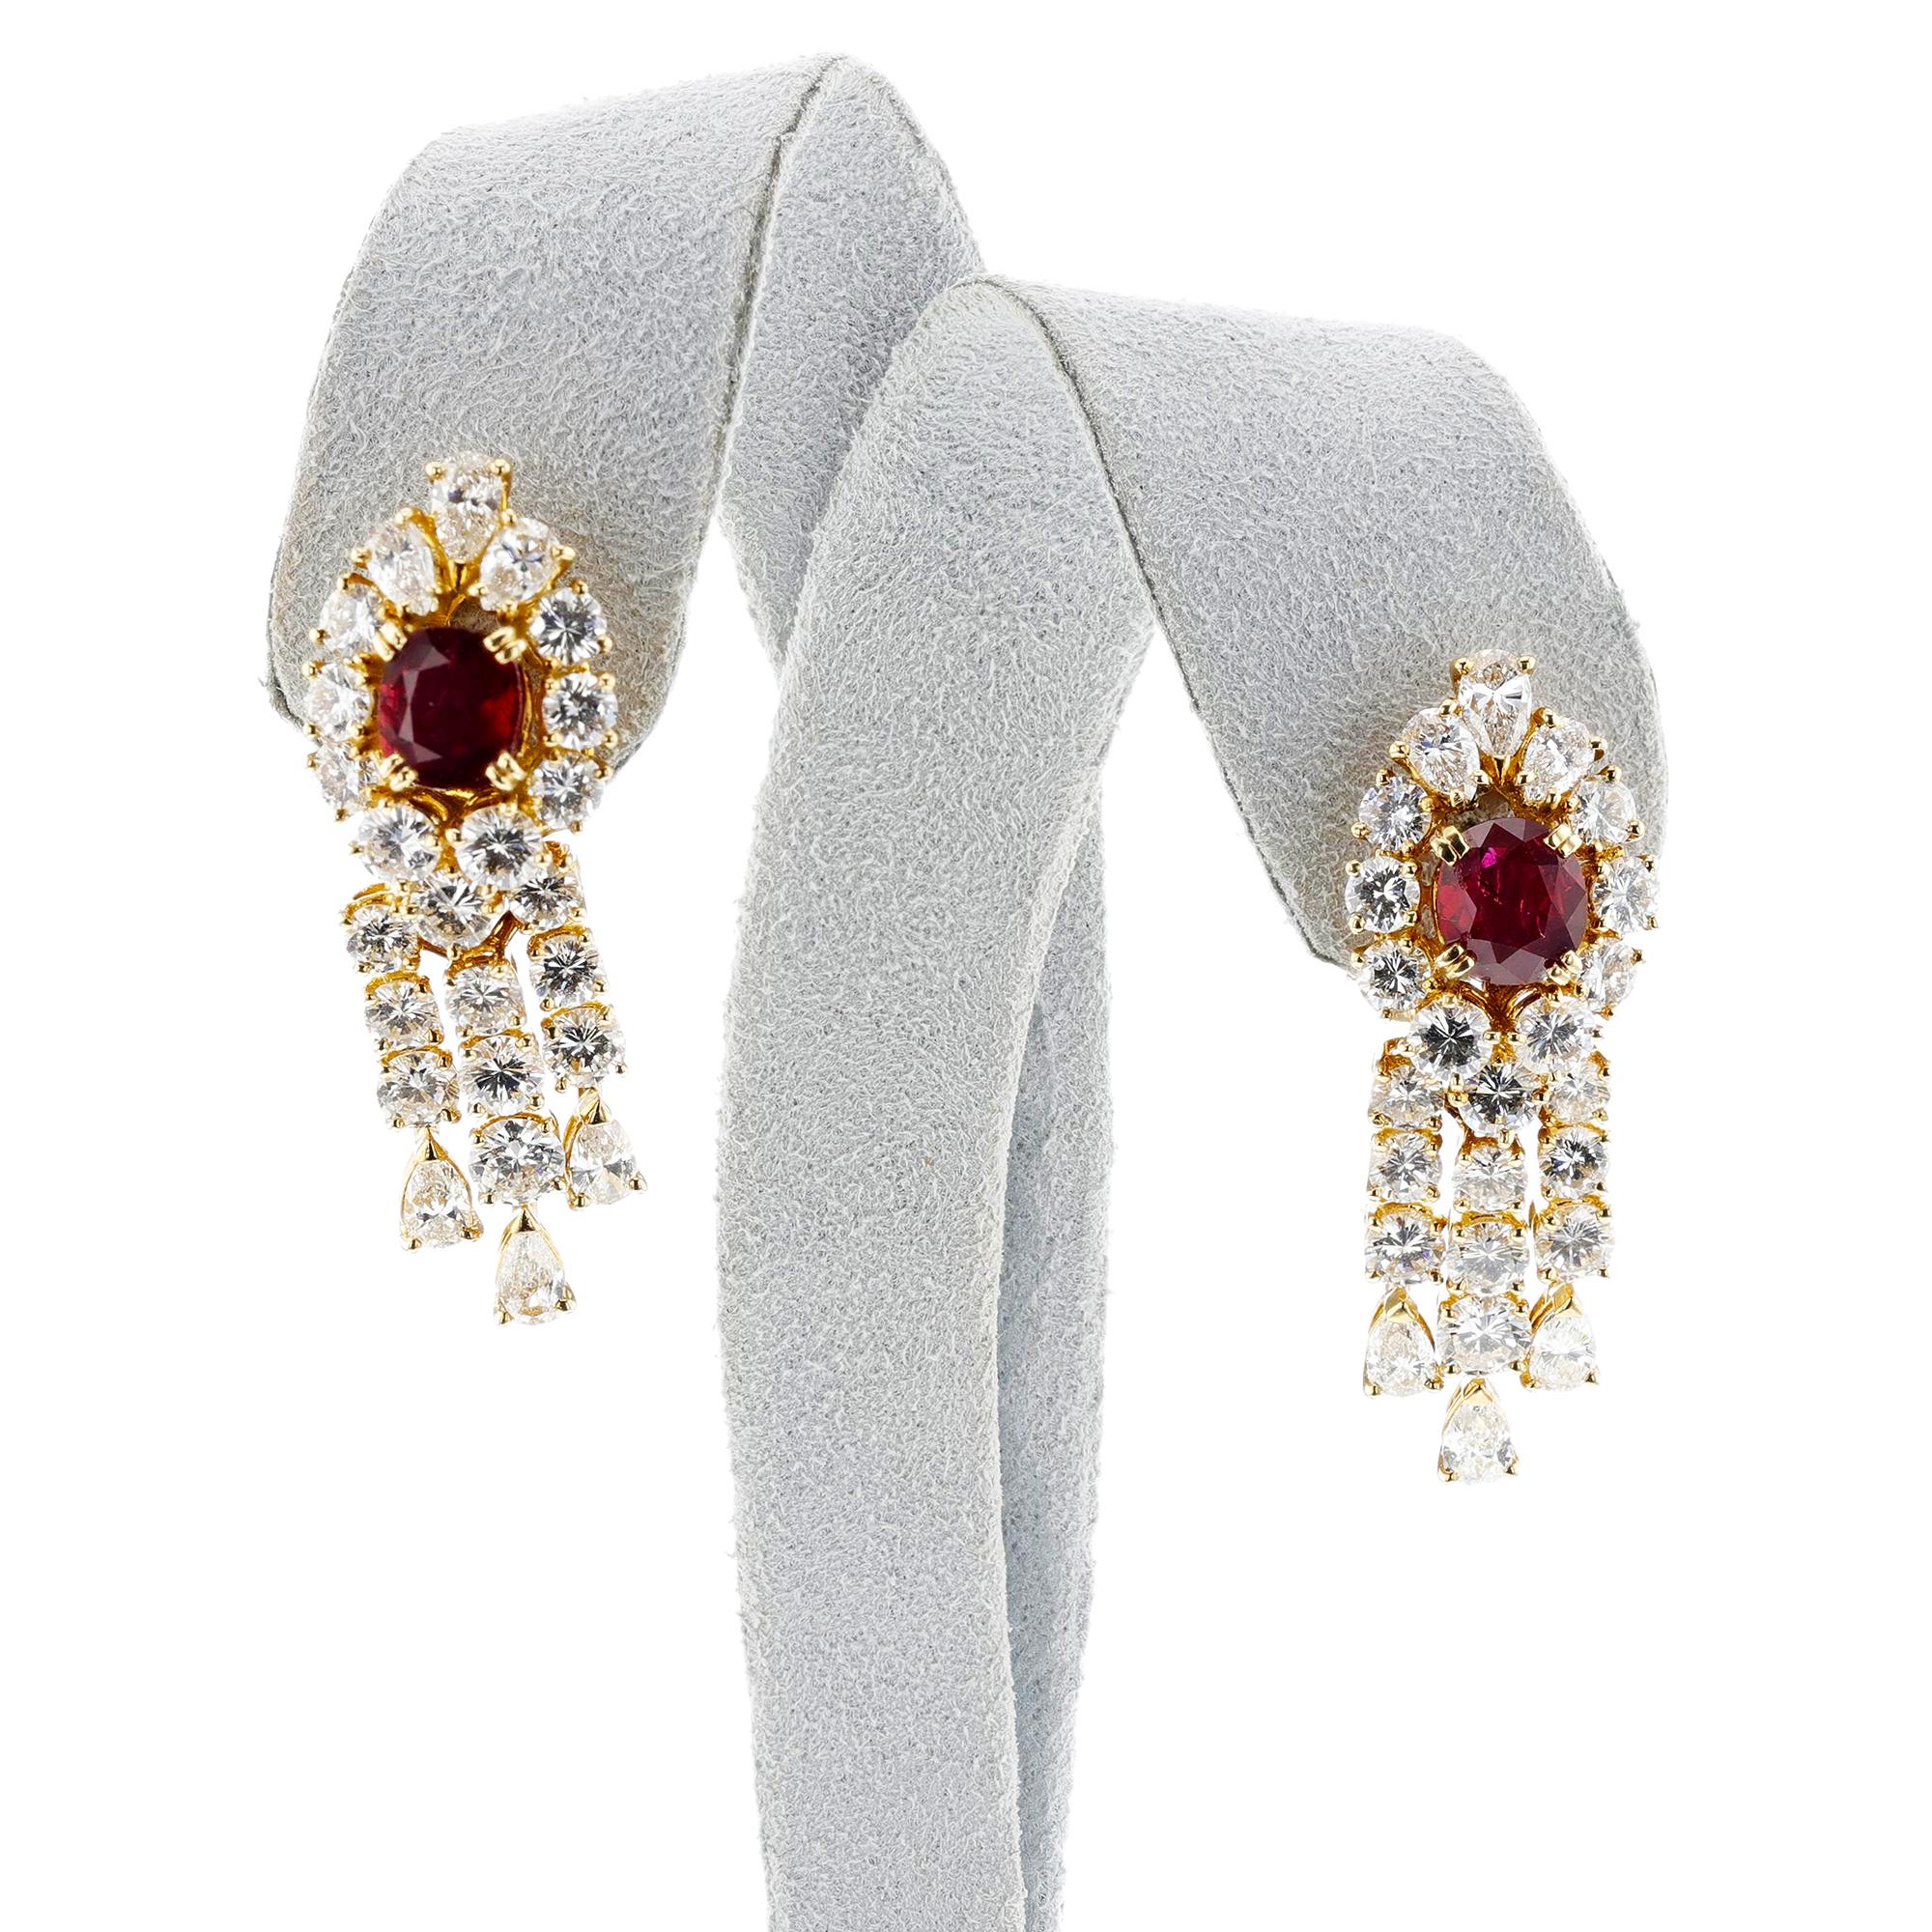 Diese Boucheron Ruby and Diamond Day & Night Ohrringe sind aus 18 Karat Gold gefertigt und mit Diamanten und natürlichen Rubinen besetzt. Das elegante Design zeigt eine ausgewogene Mischung aus Modernität und zeitlosem Charme, perfekt für jeden